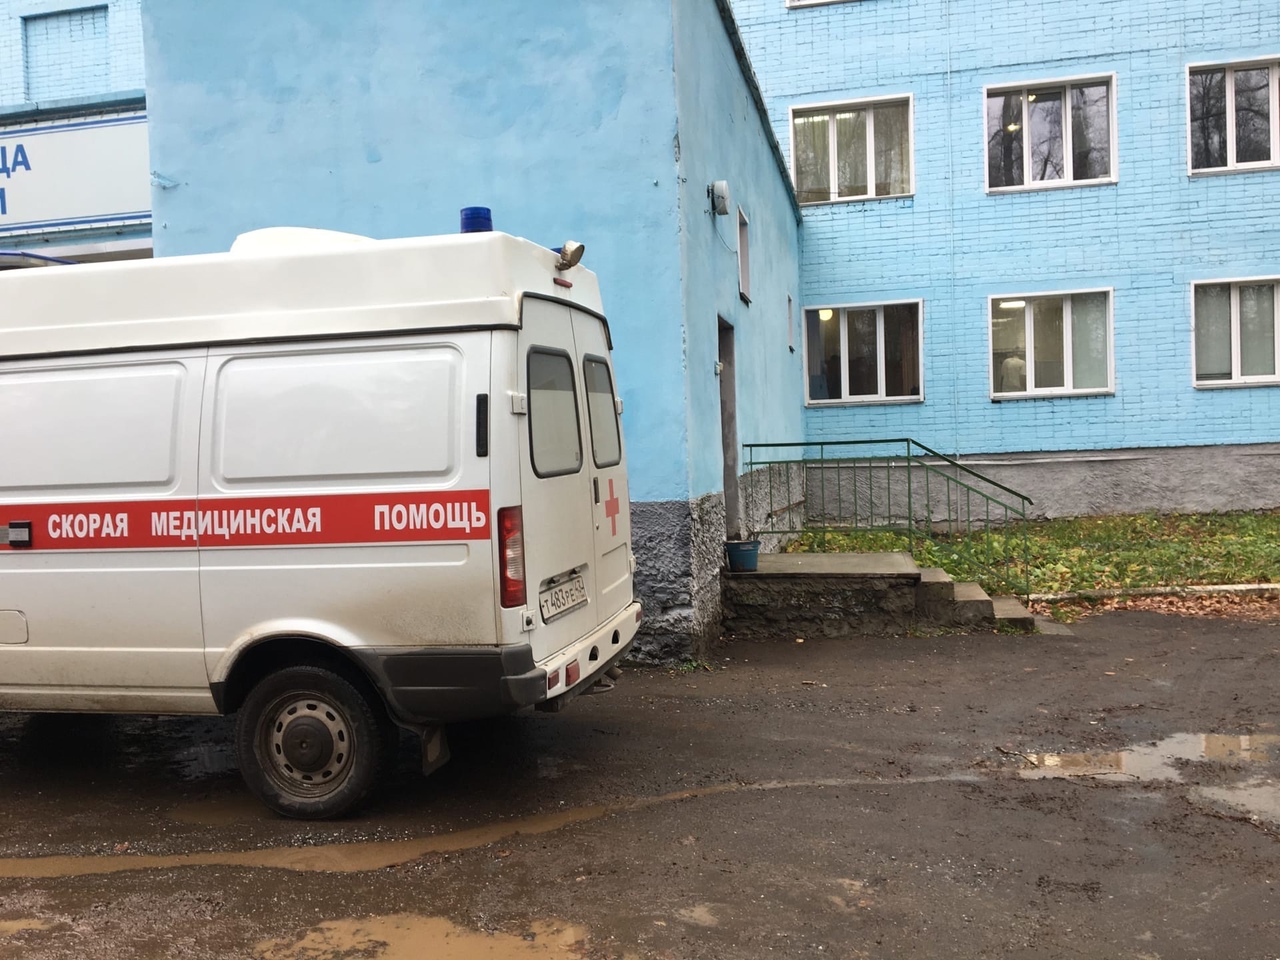 "Крови было - ужас, он ее буквально запинывал в асфальт”: очевидцы об избиении девушки в Чепецке